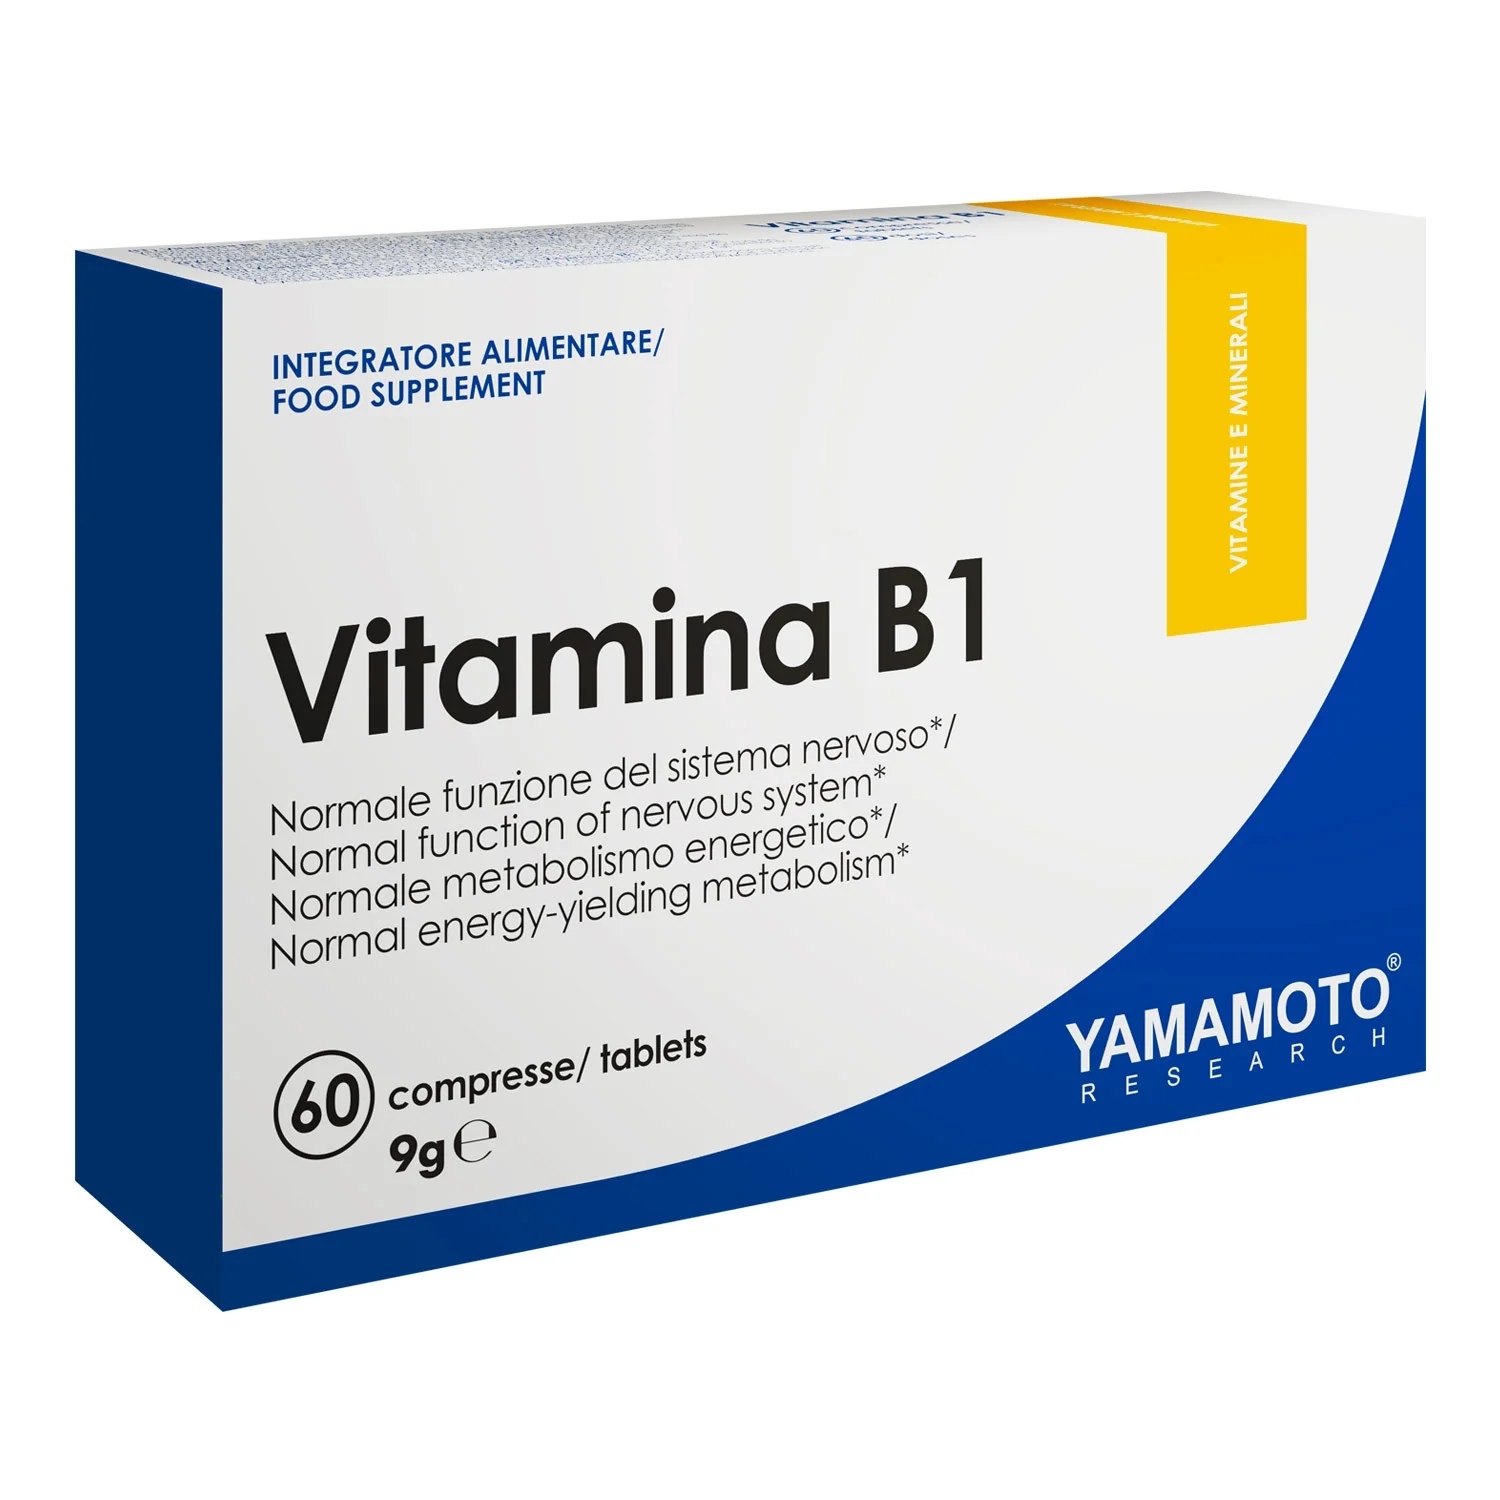 Yamamoto Natural Series Vitamina B1 / 60 tablets